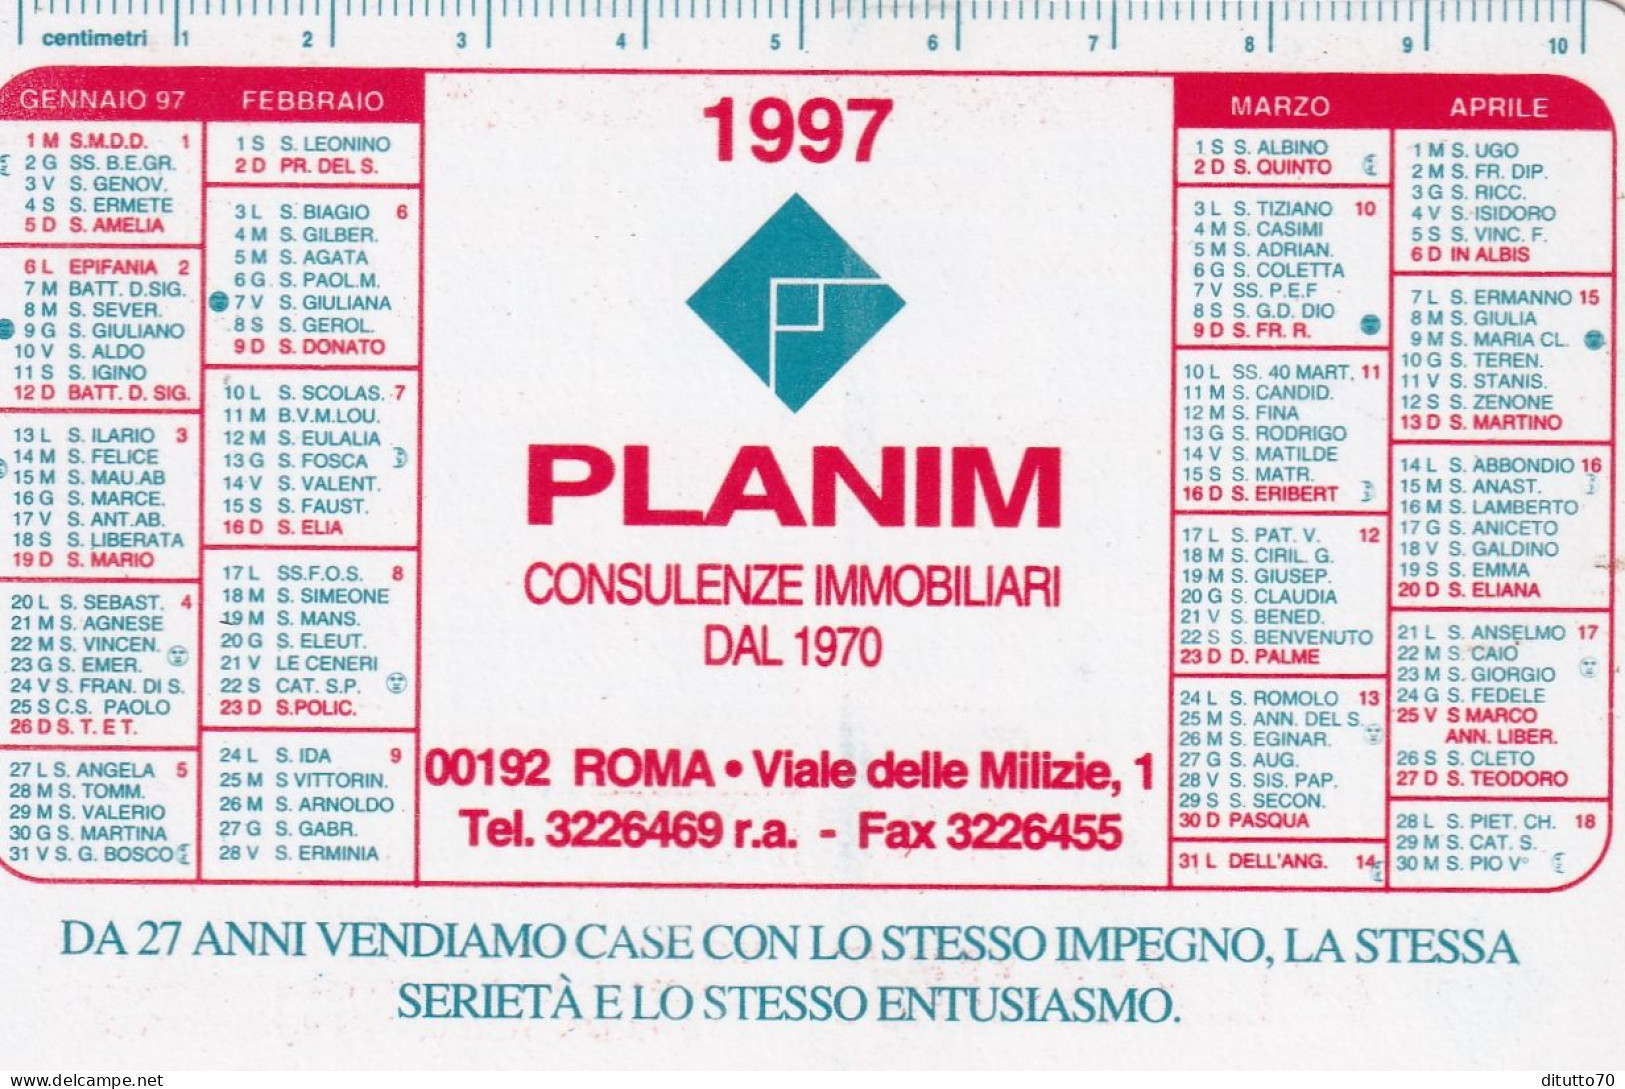 Calendarietto - Planim - Consulenza Immobiliari - Roma - Anno 1997 - Formato Piccolo : 1991-00